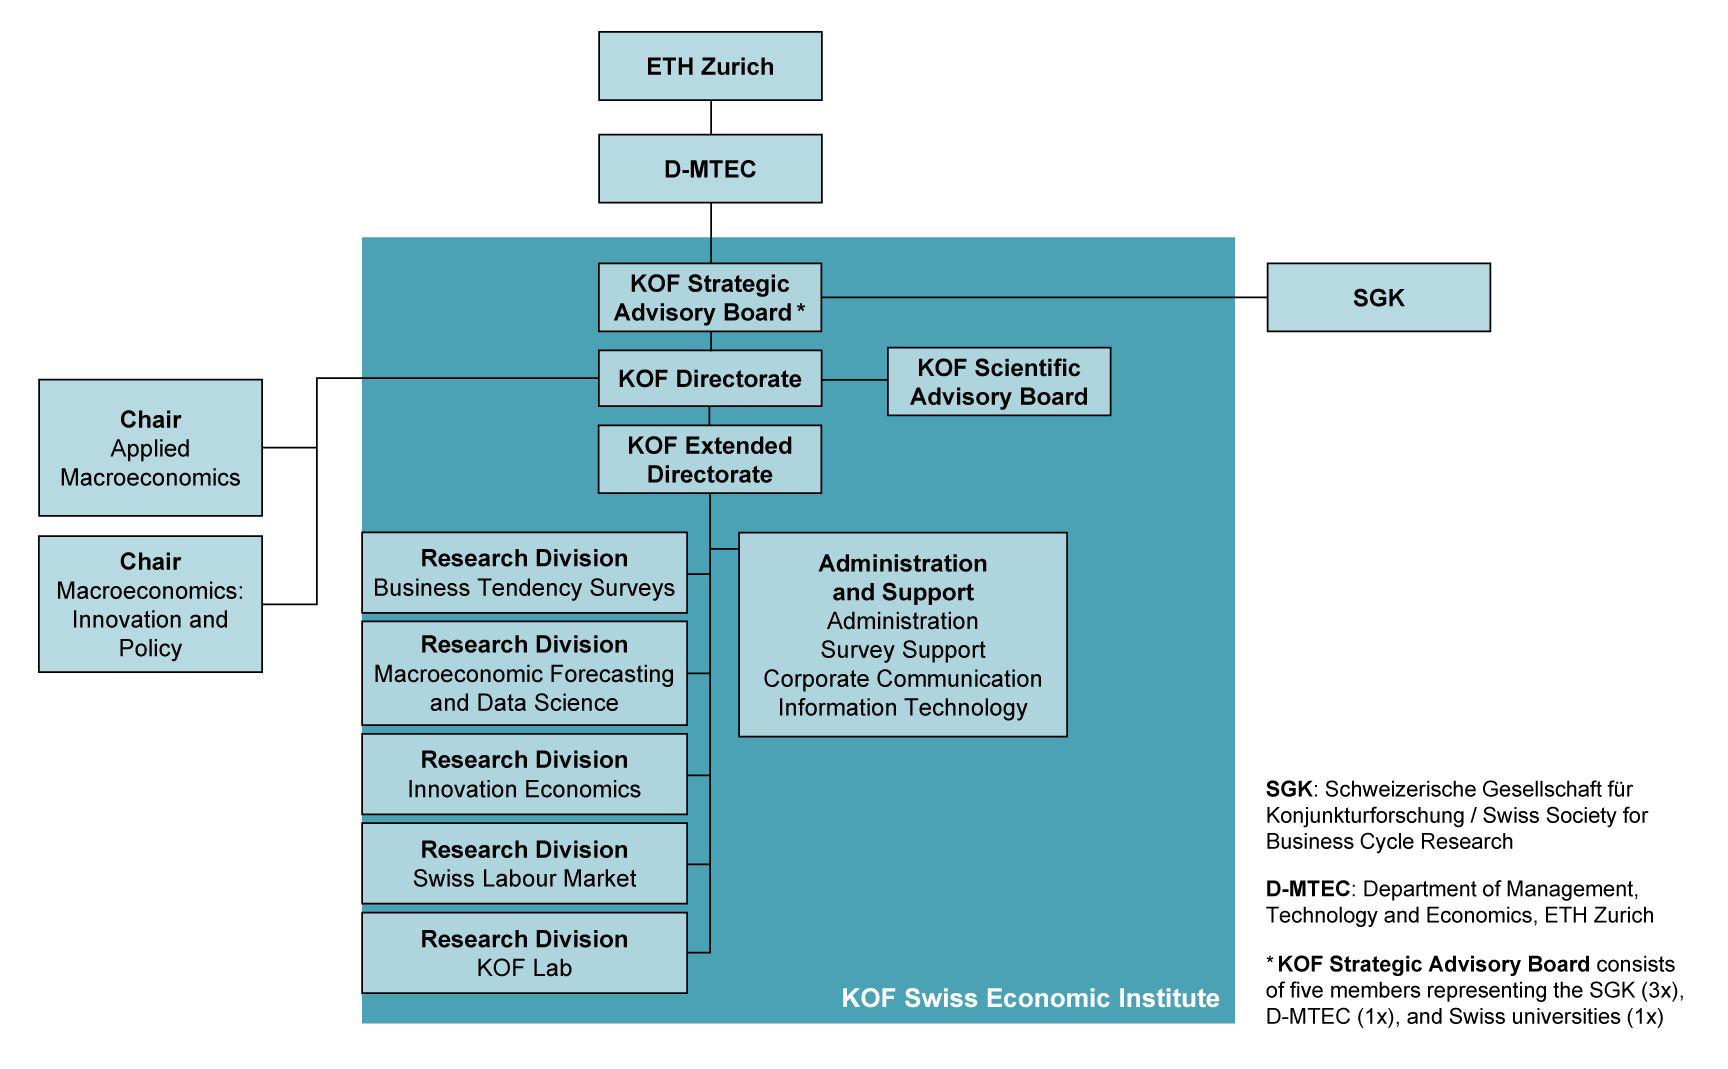 Enlarged view: Le KOF est rattaché au Department of Management, Technology, and Economics de l'EPF Zurich. Outre l'EPF, le KOF est également soutenu par la Société suisse de recherches conjoncturelles (SGK). Le Conseil stratégique du KOF conseille la direction du KOF sur les questions stratégiques et approuve la stratégie. Le Conseil scientifique assiste la direction du KOF. Le directoire élargi est subordonné au directoire. Les différents domaines de recherche ainsi que les services centraux en dépendent. Tous les domaines sont indiqués ci-dessus. Les deux chaires Applied Macroeconomics et Macroeconomics : Innovation and Policy sont associées au KOF.